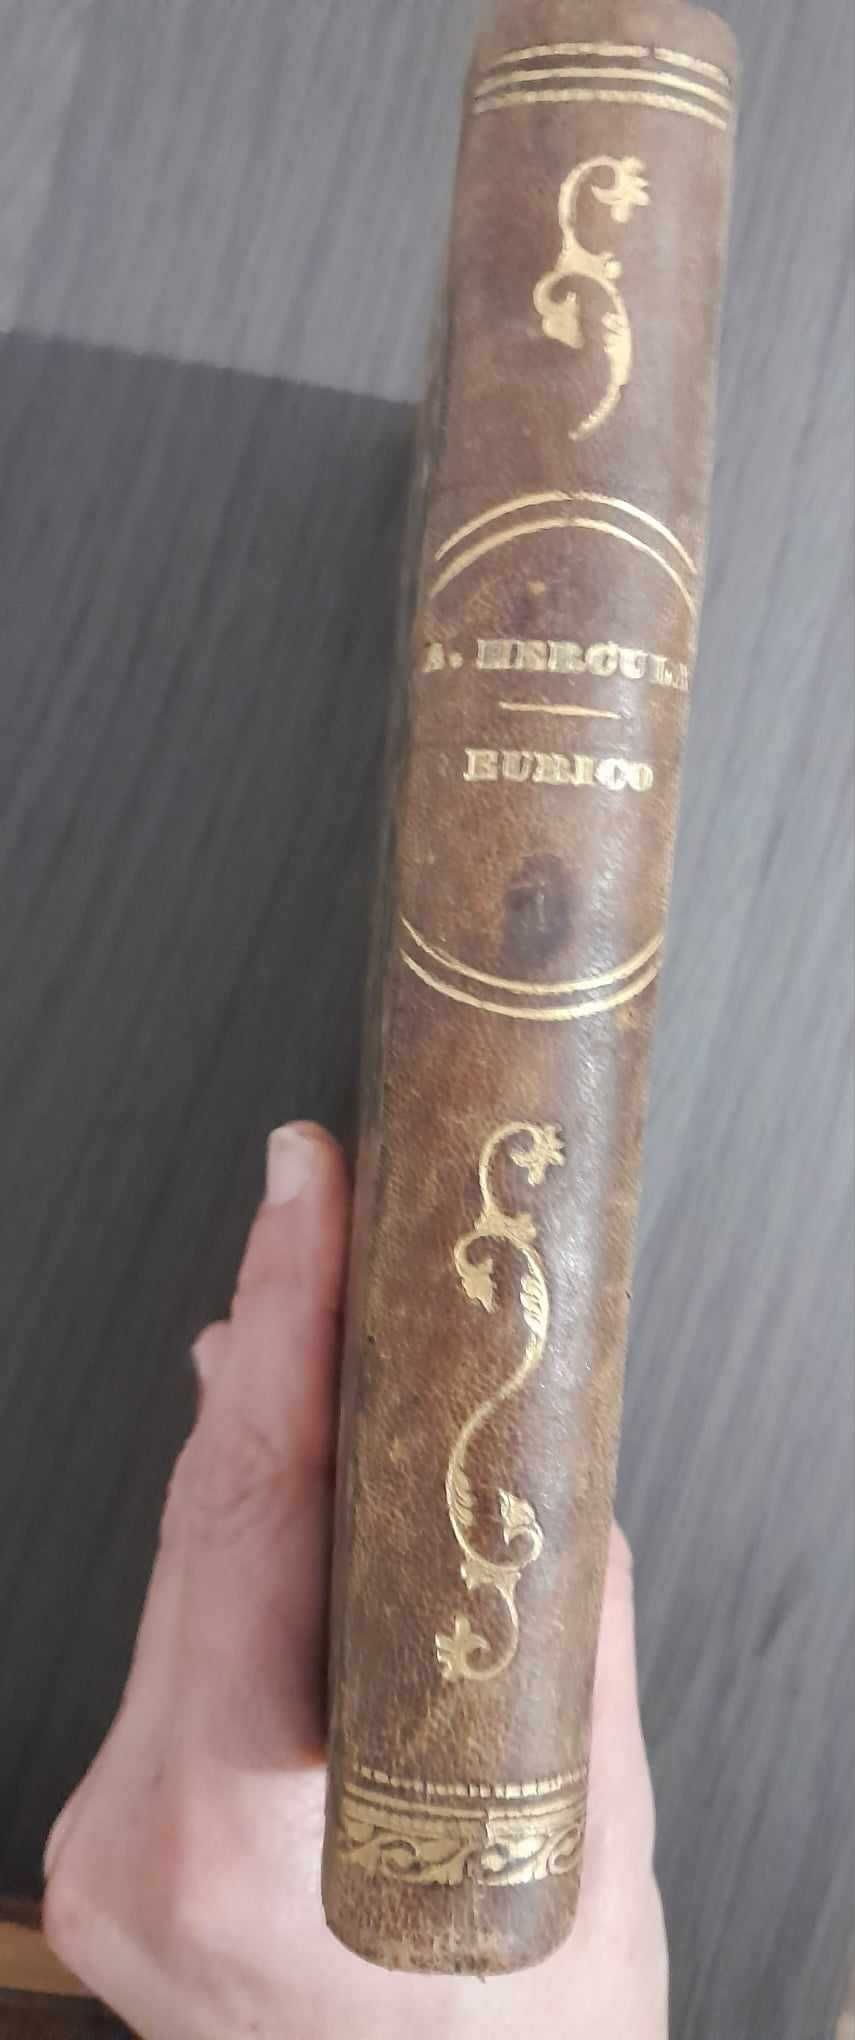 "O Monasticon - Eurico, o Presbytero" de A. Herculano - Edição 1883